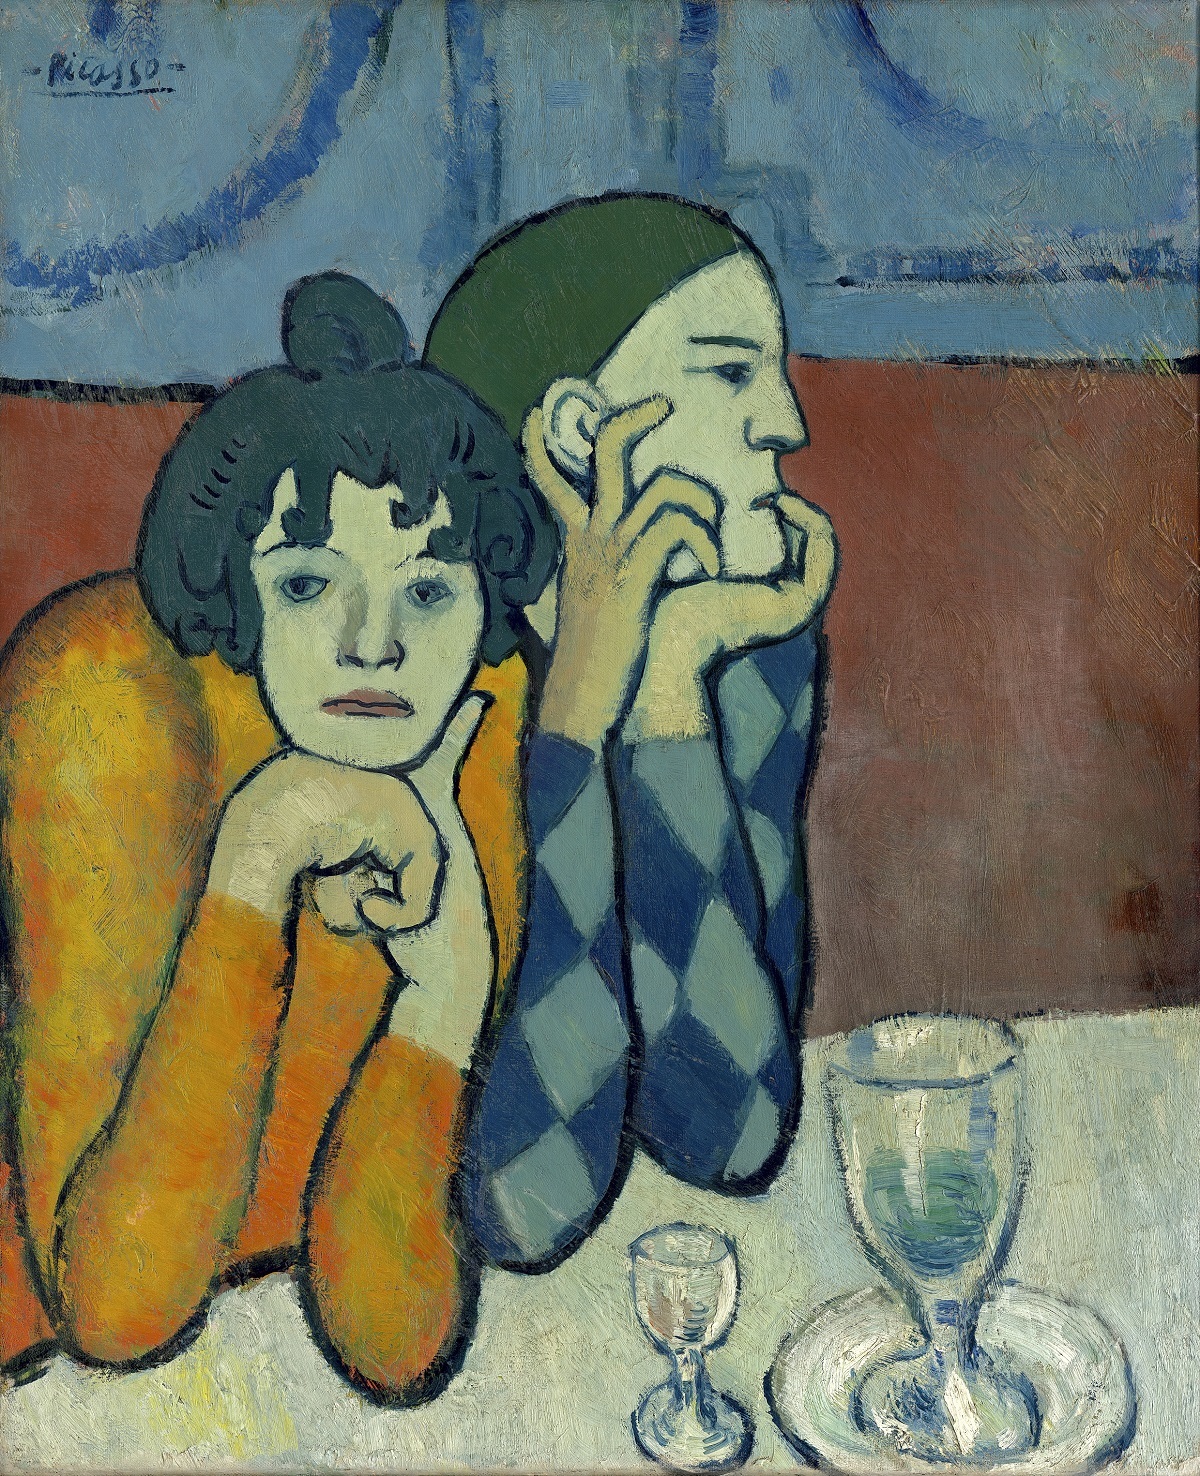 Una de las obras de la exposición, firmada por Picasso.